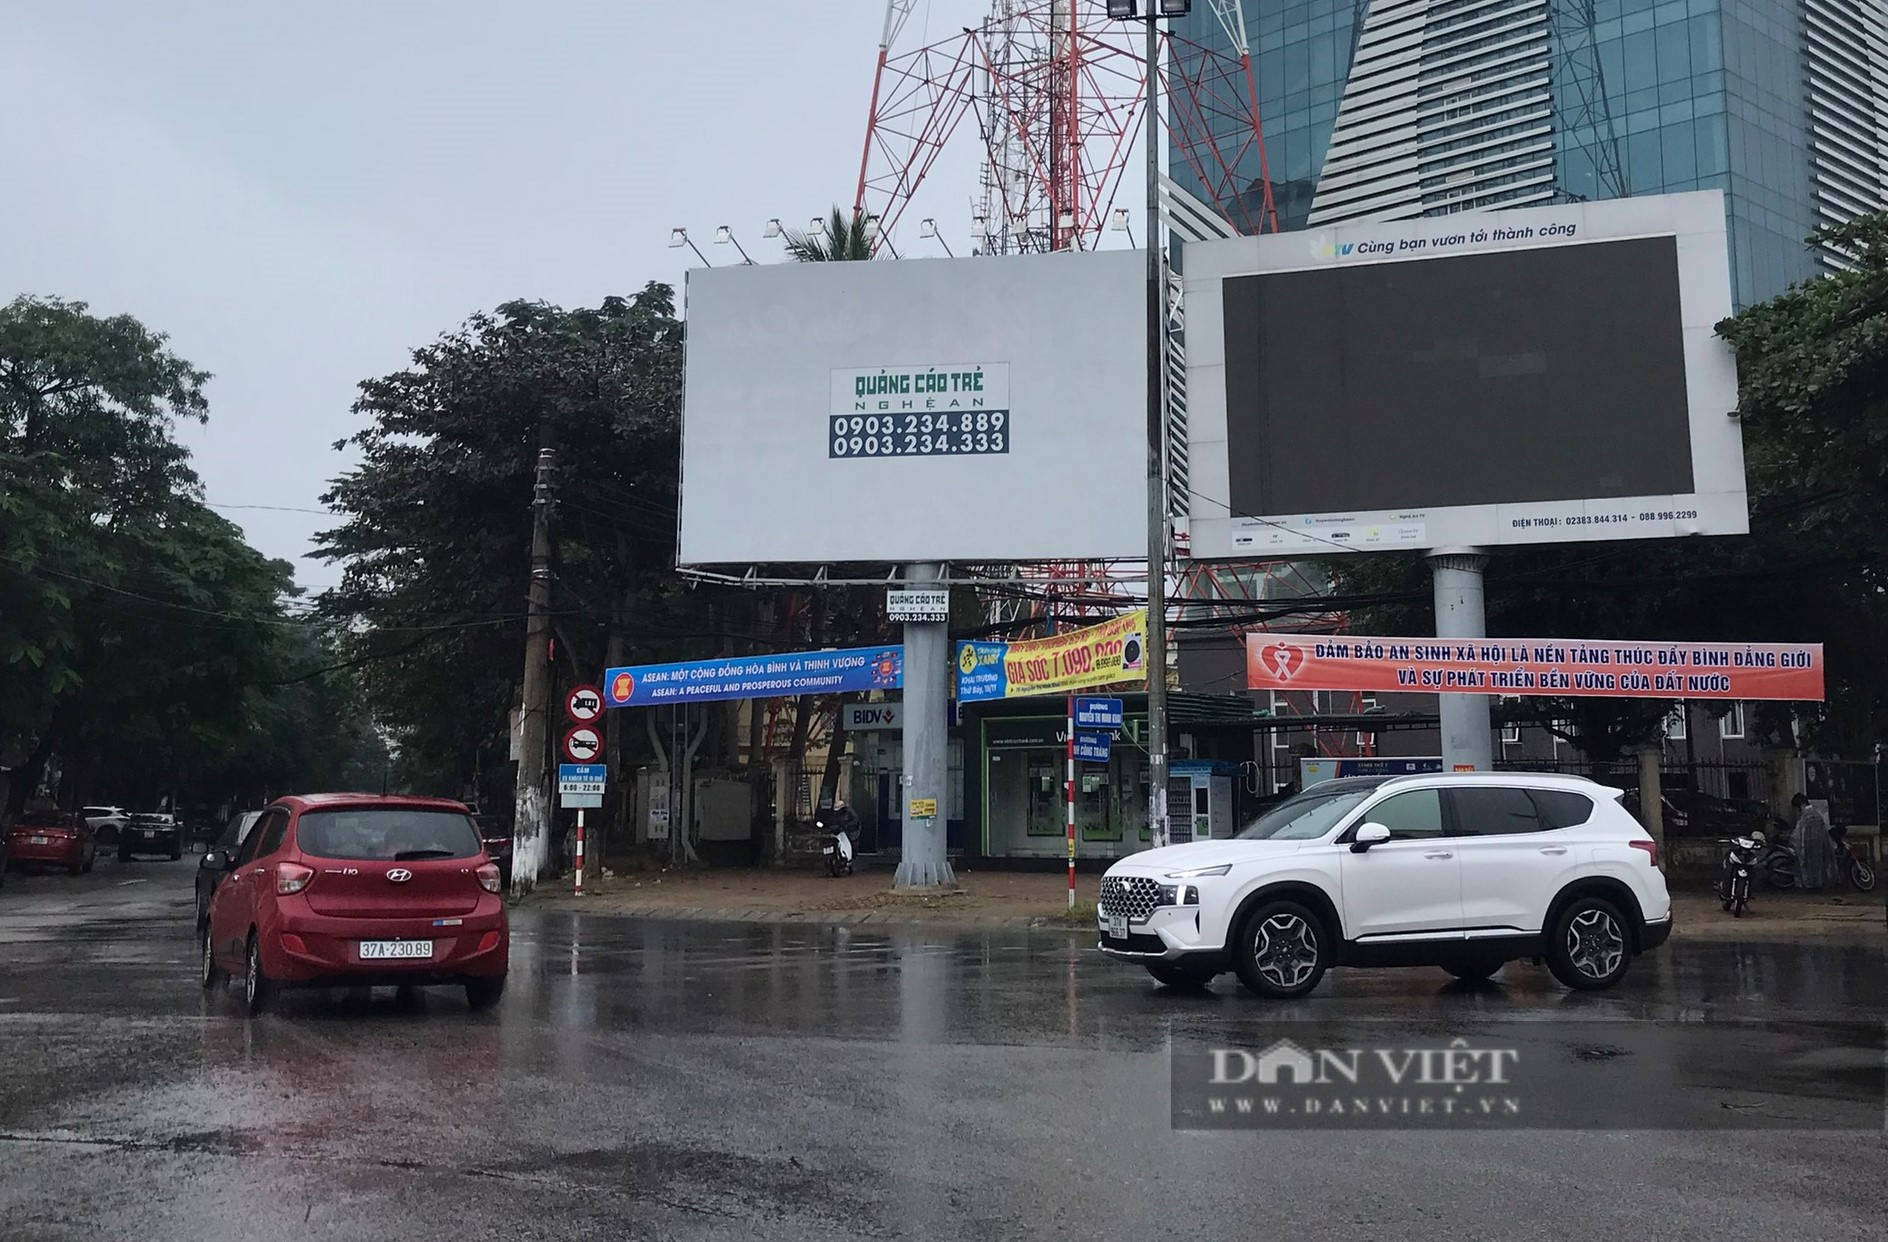 Loạn ma trận biển quảng cáo ở thành phố Vinh, Nghệ An - Ảnh 7.